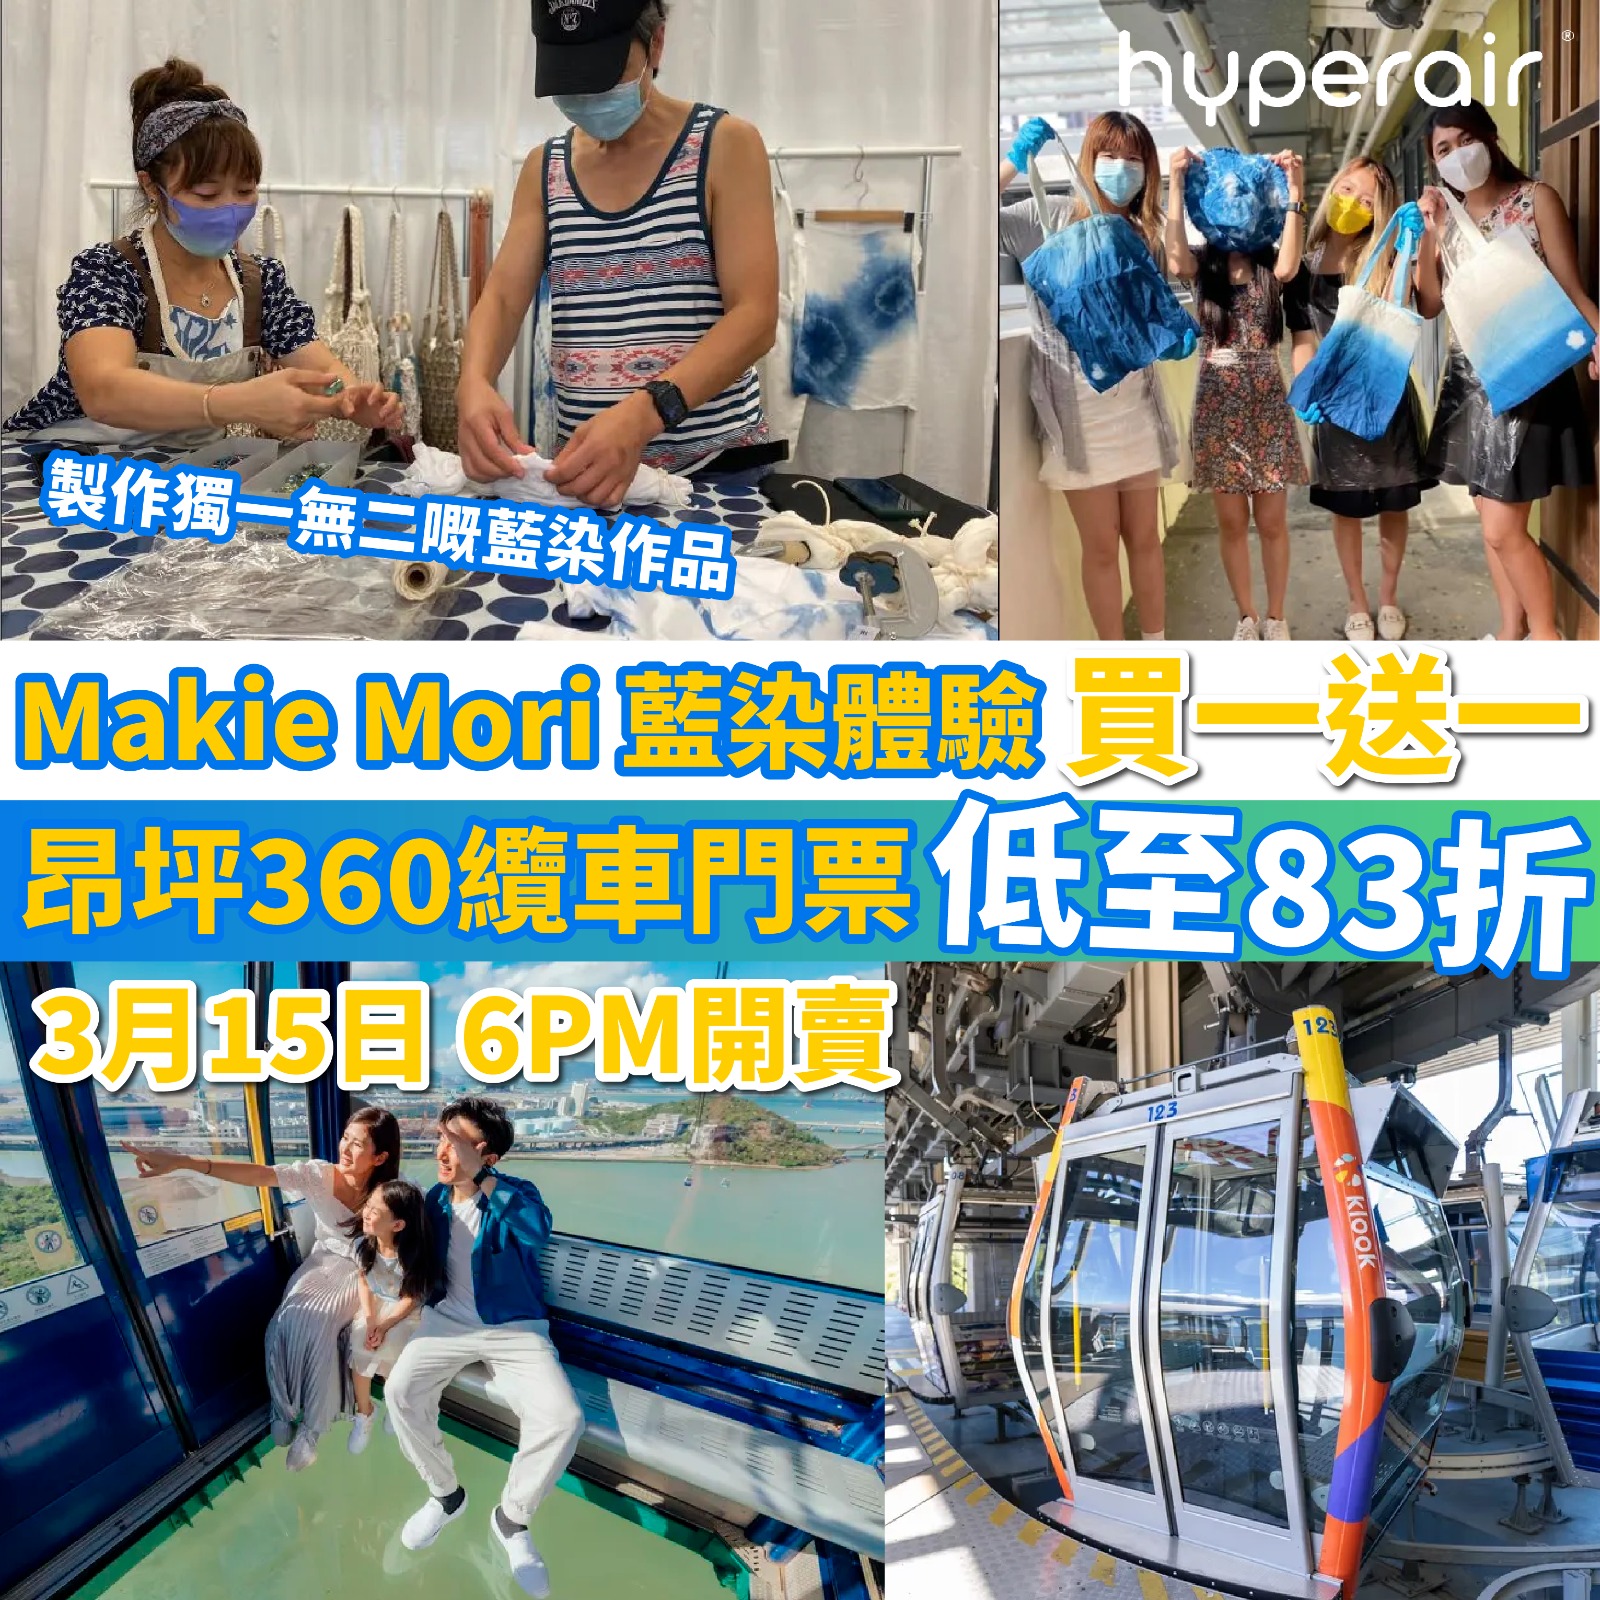 3月15日 6PM 開搶！香港本地兩大玩樂優惠：昂坪360纜車門票低至83折、藍染 Shibori新體驗買一送一！